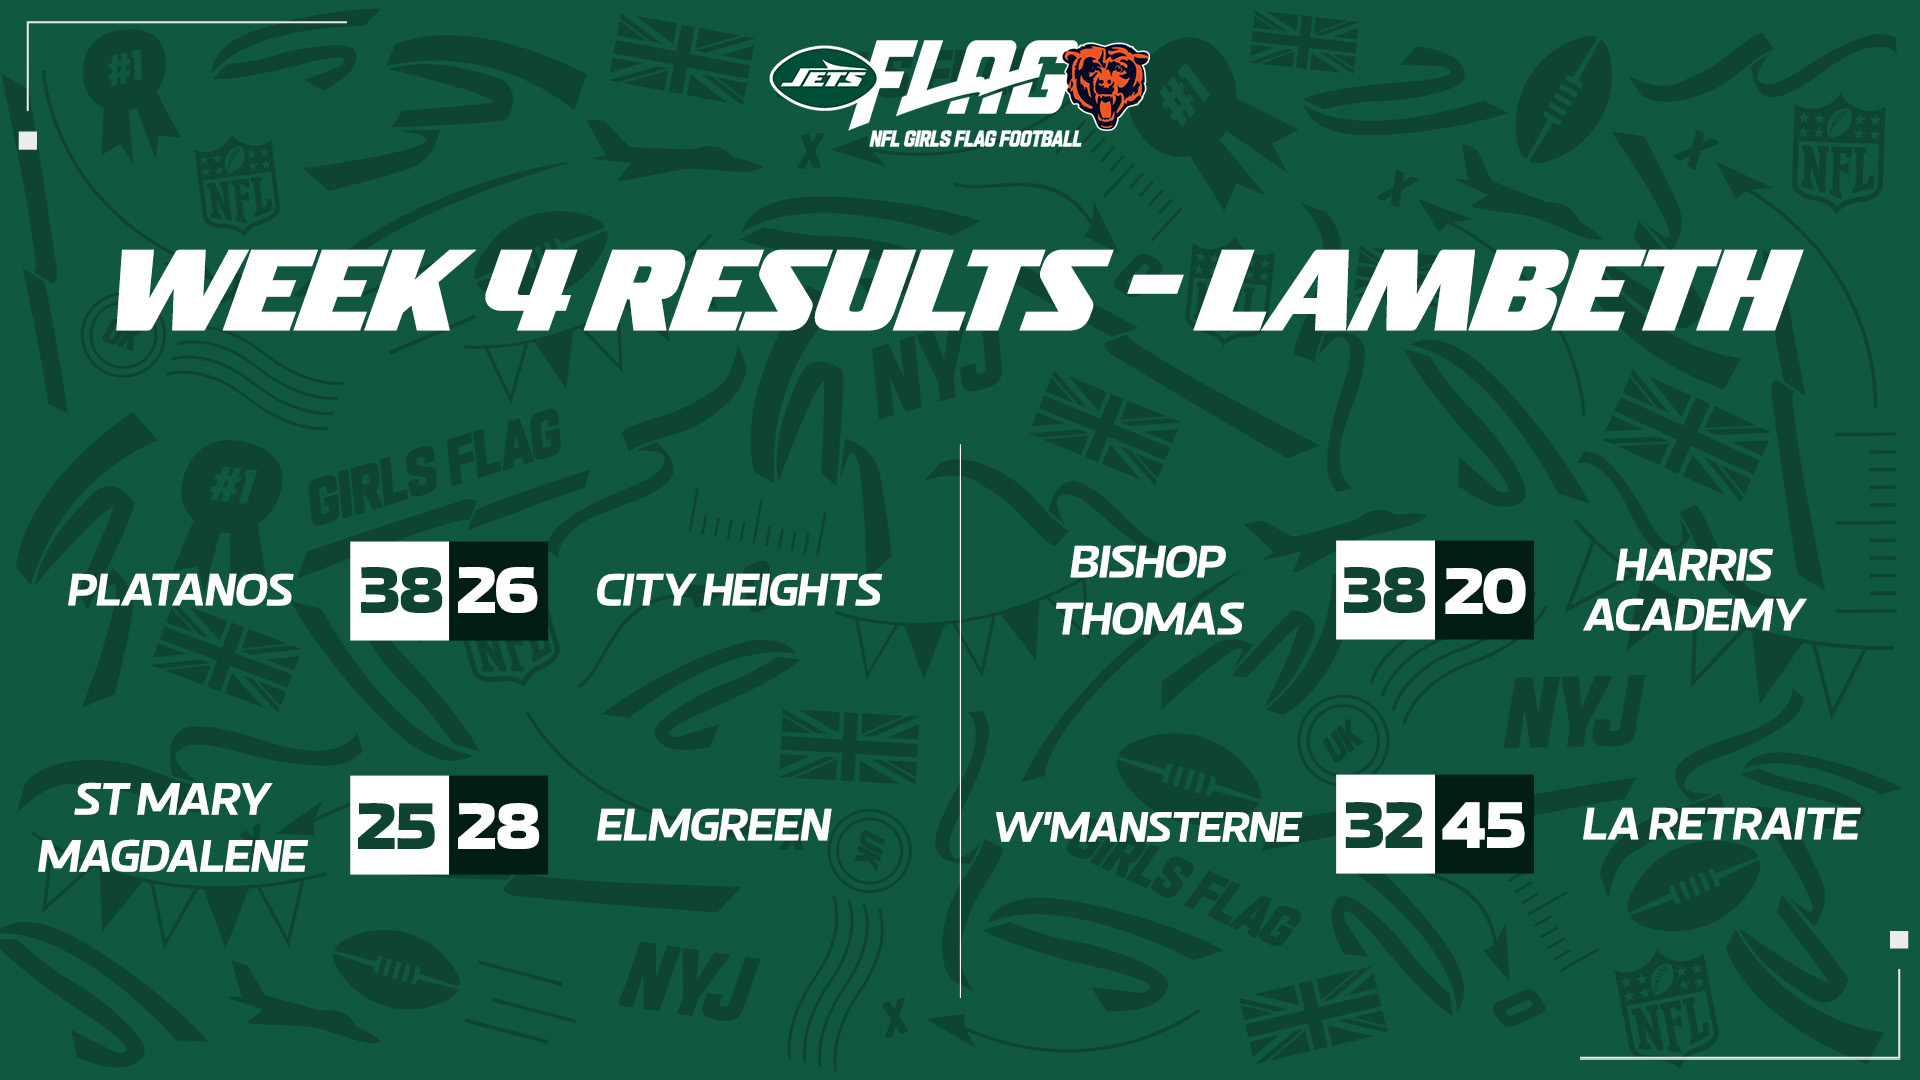 Lambeth Results Week 4